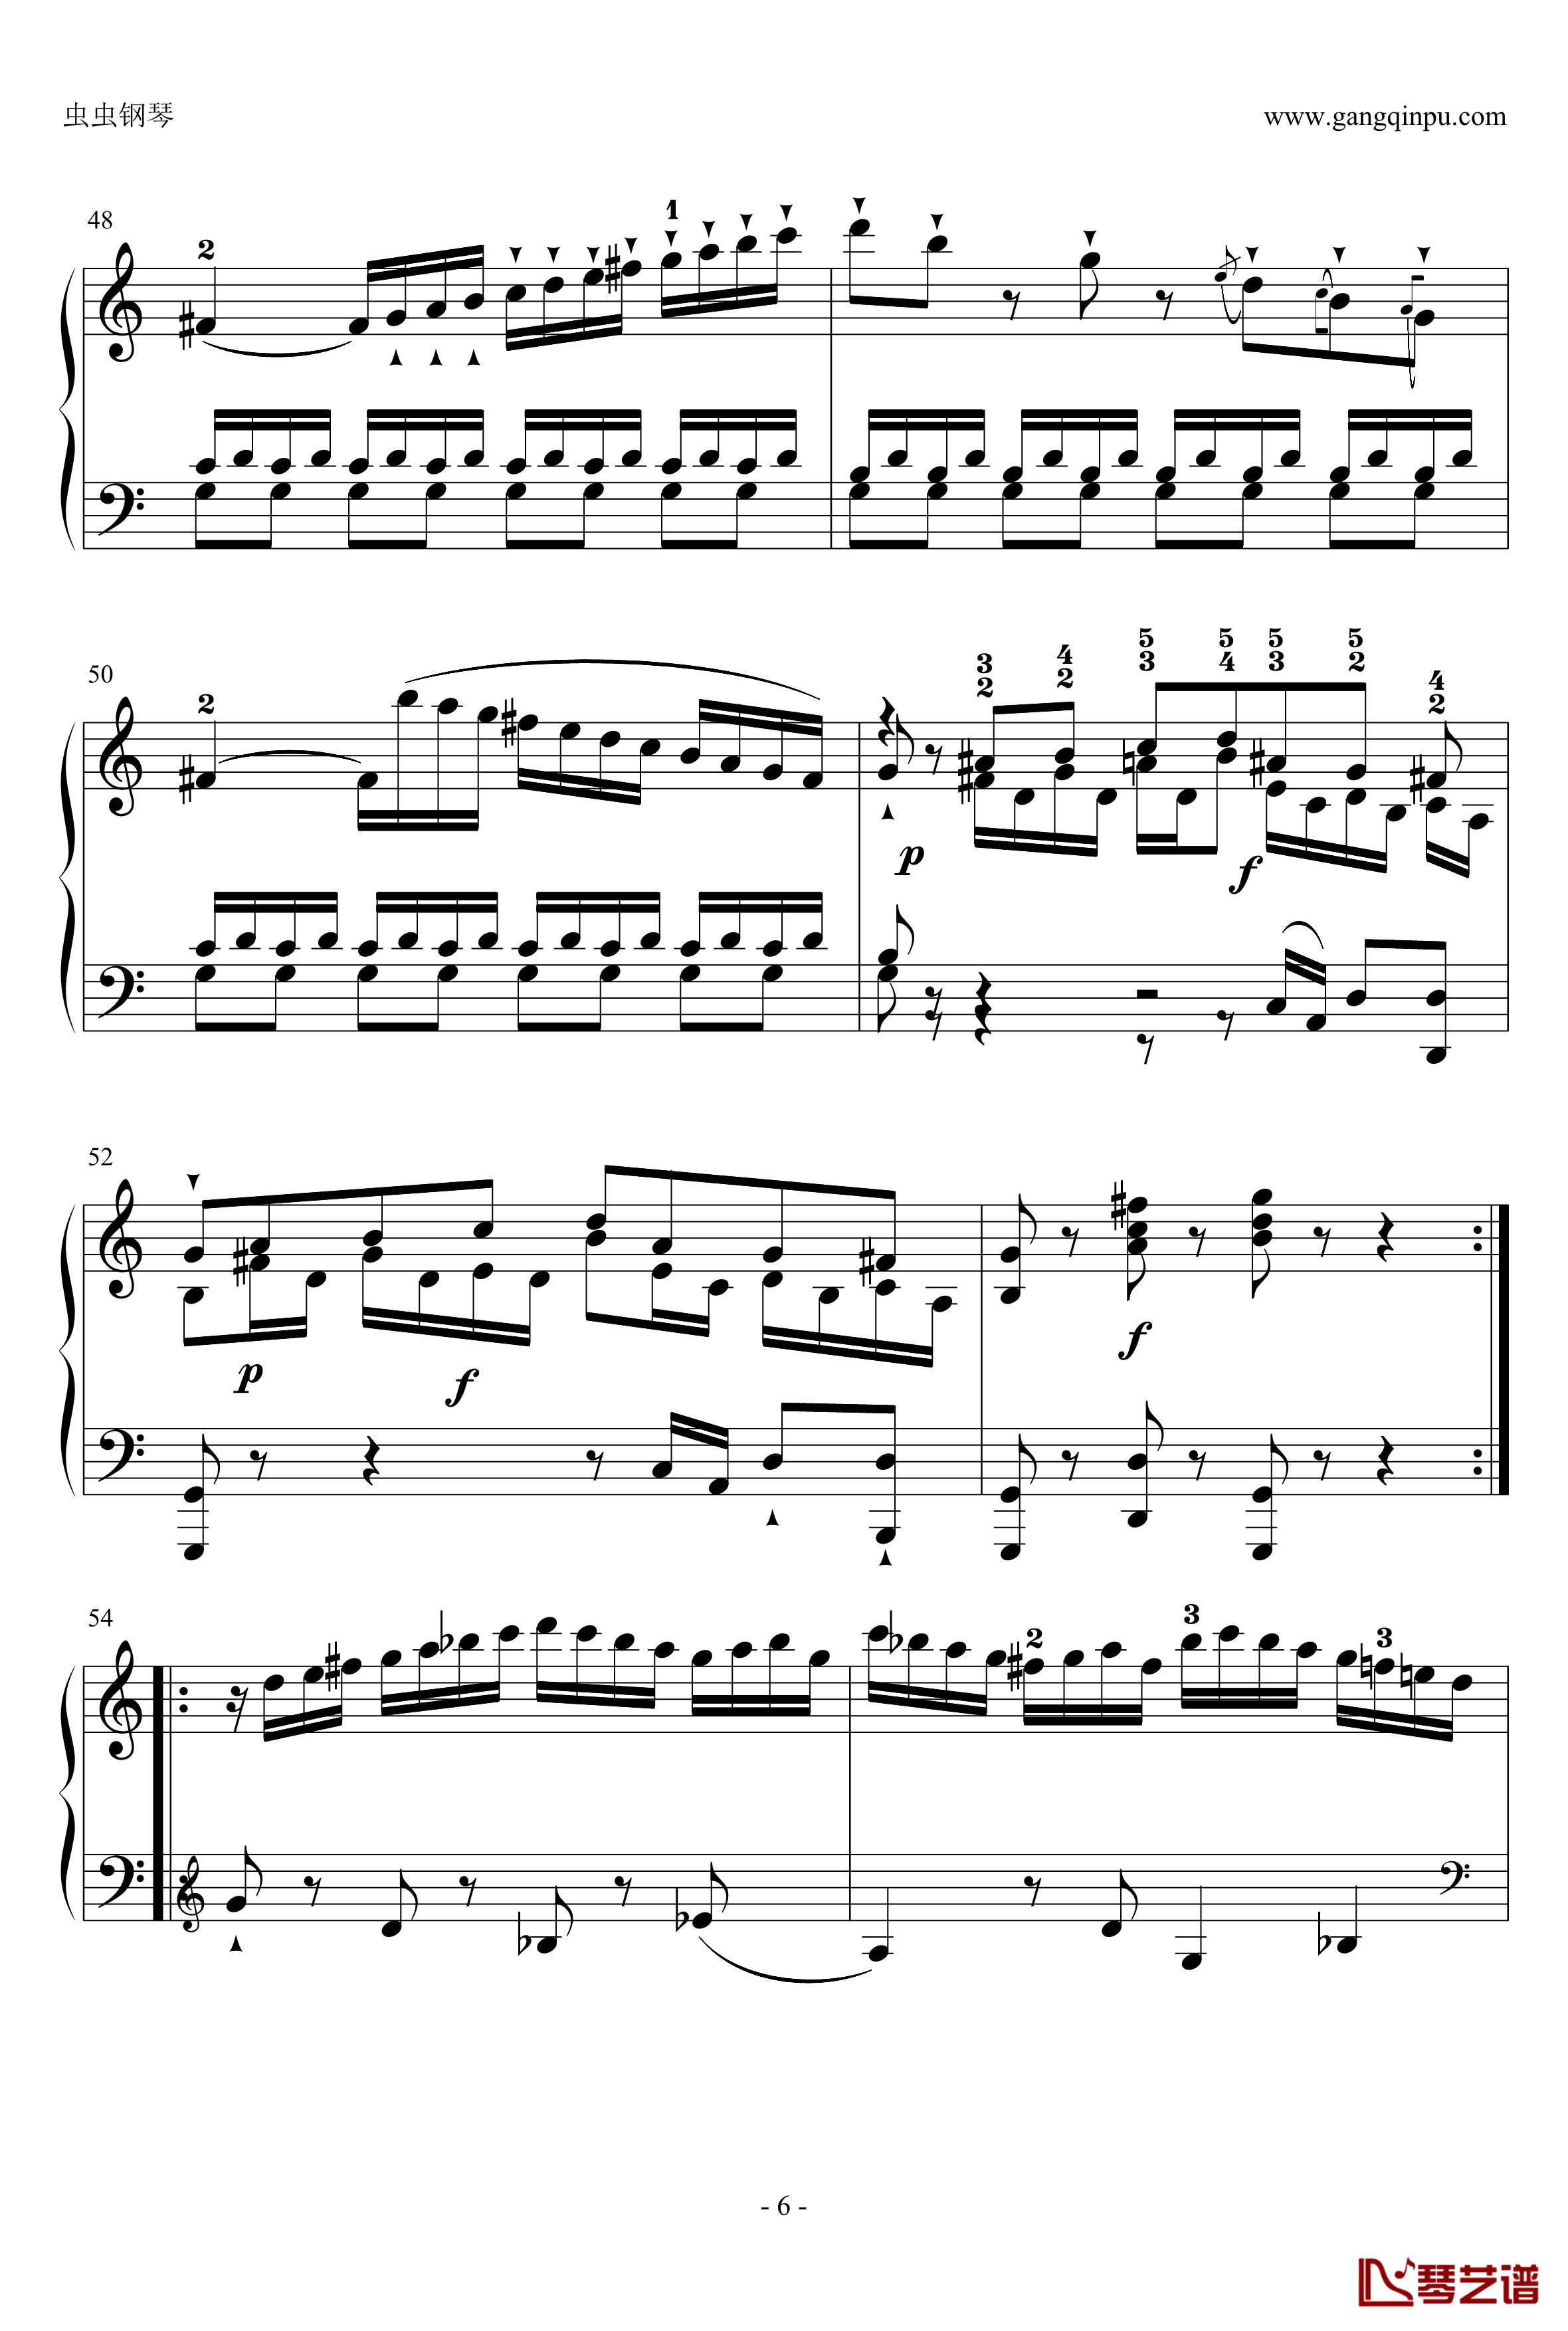 C大调奏鸣曲钢琴谱第一乐章-海顿6